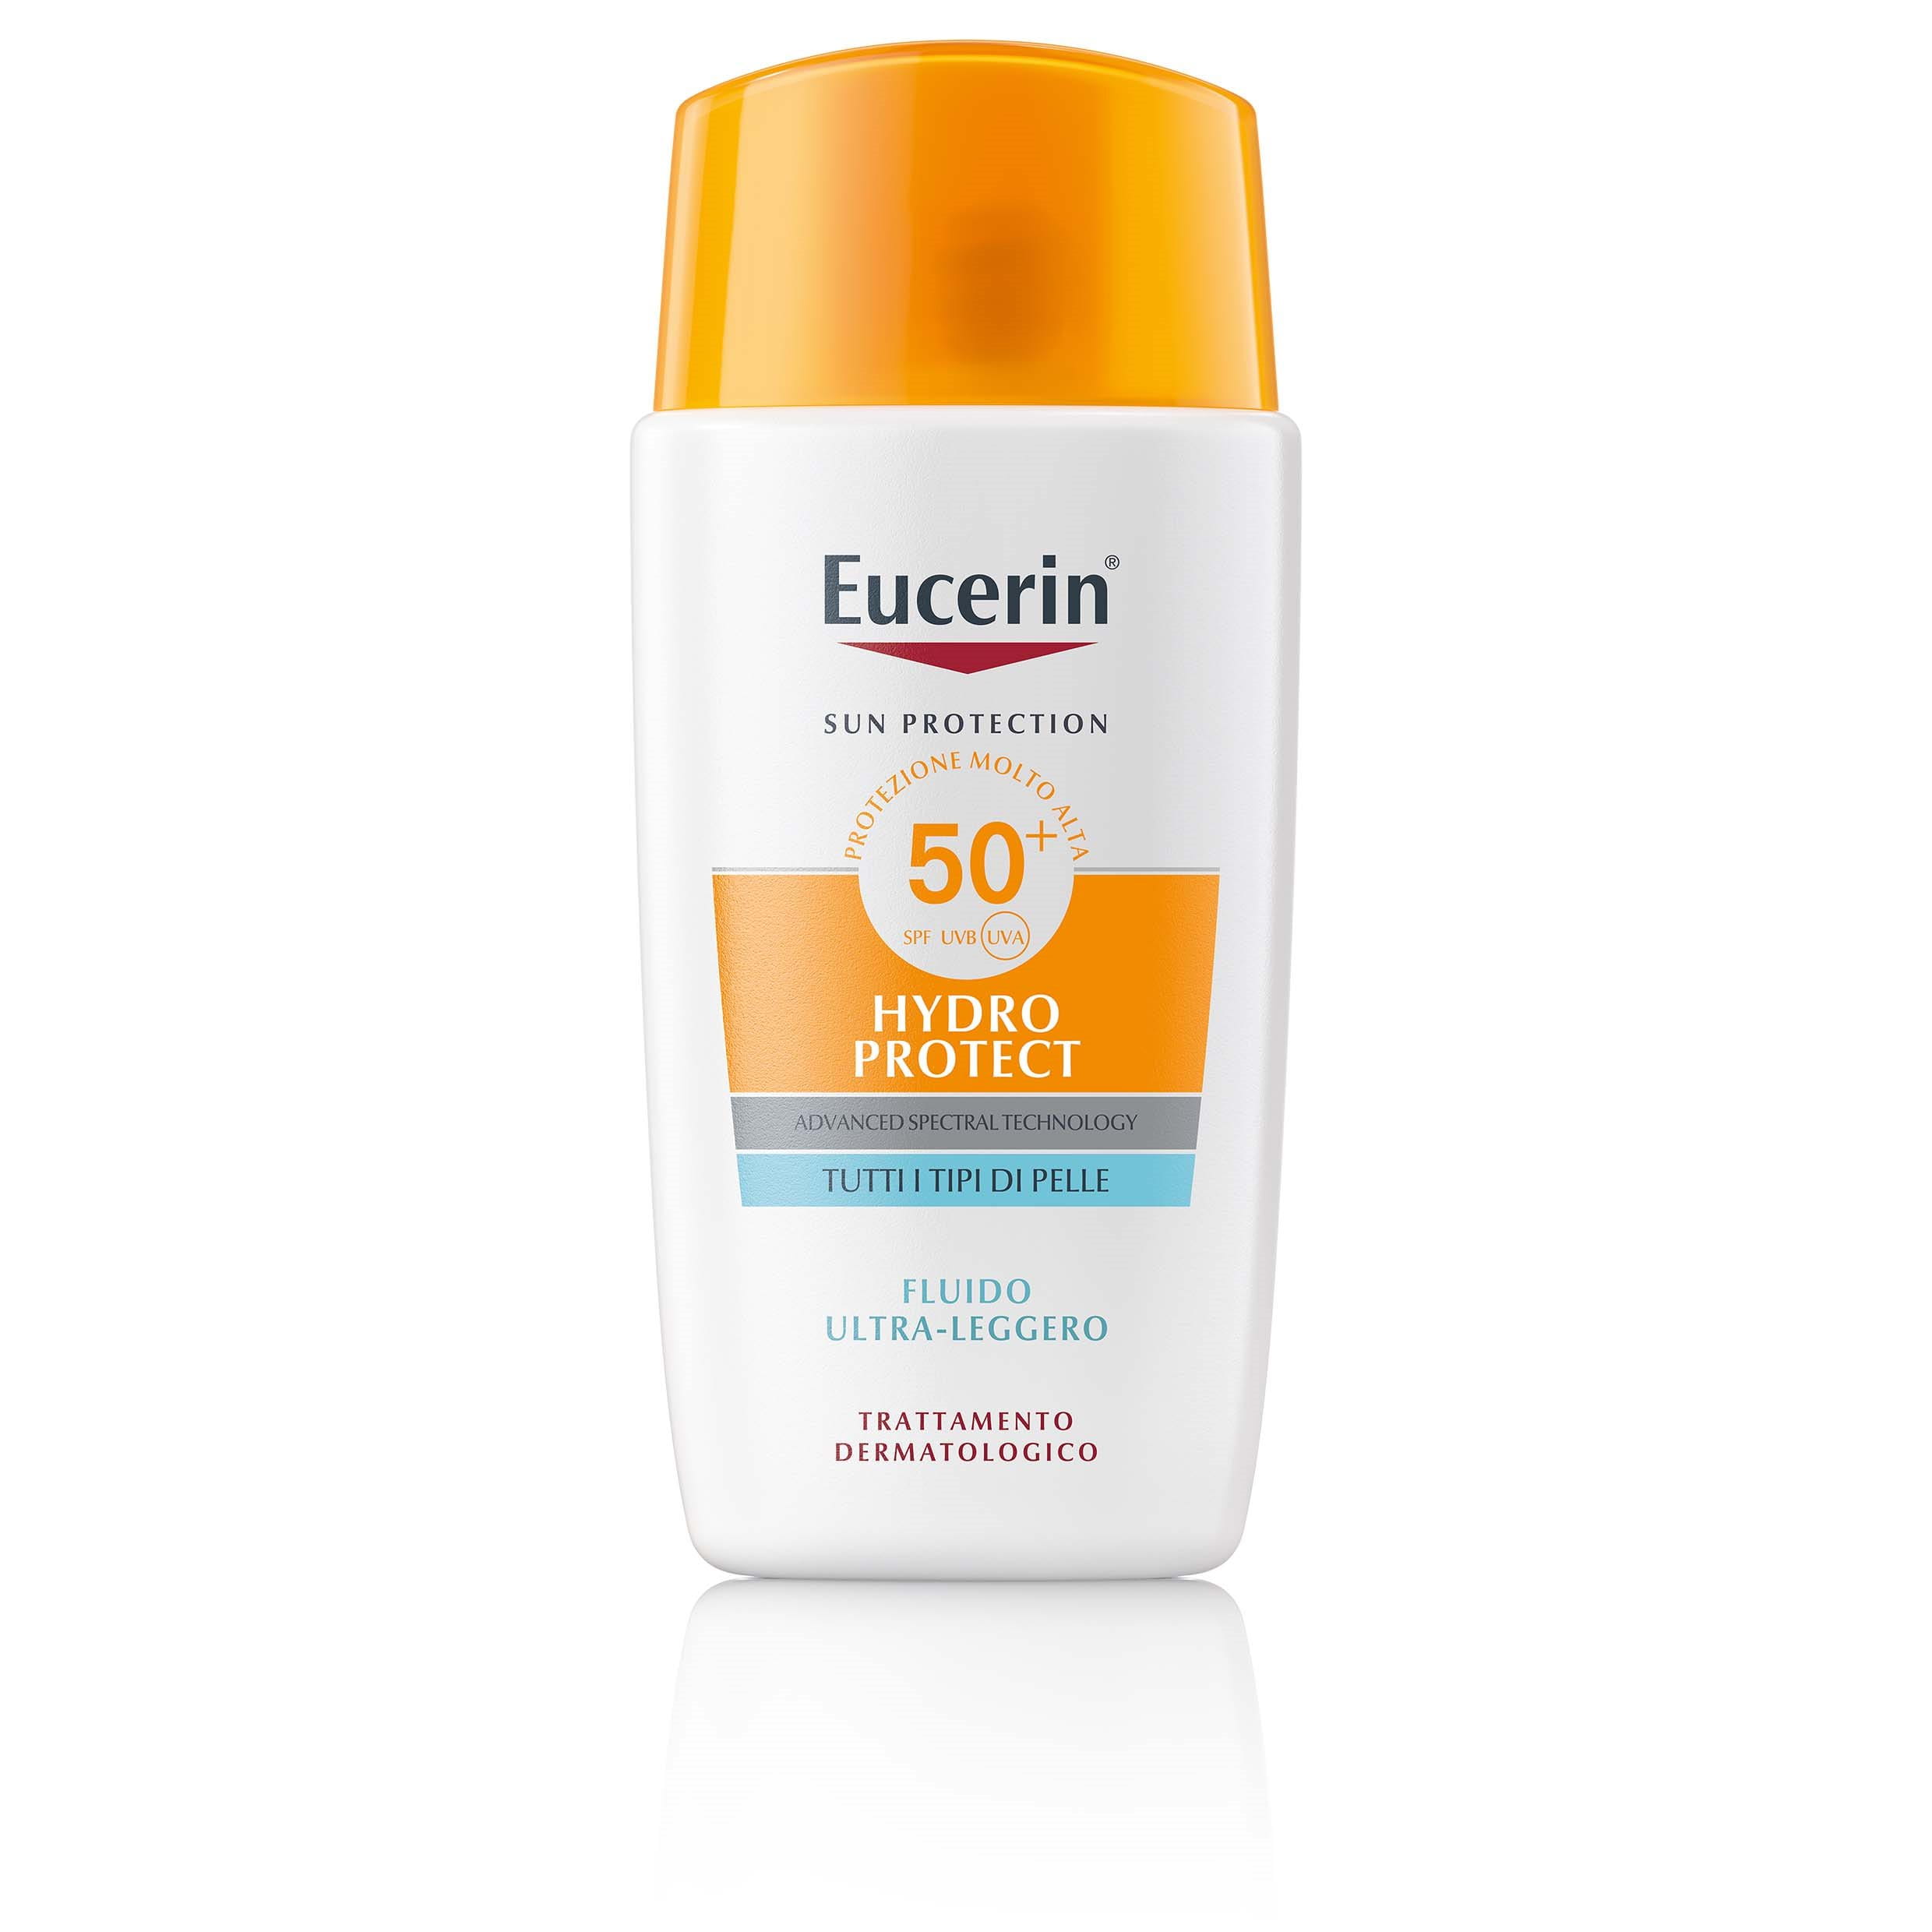 Eucerin Sun Face Hydro Protect Ultra-Light Fluid SPF 50+